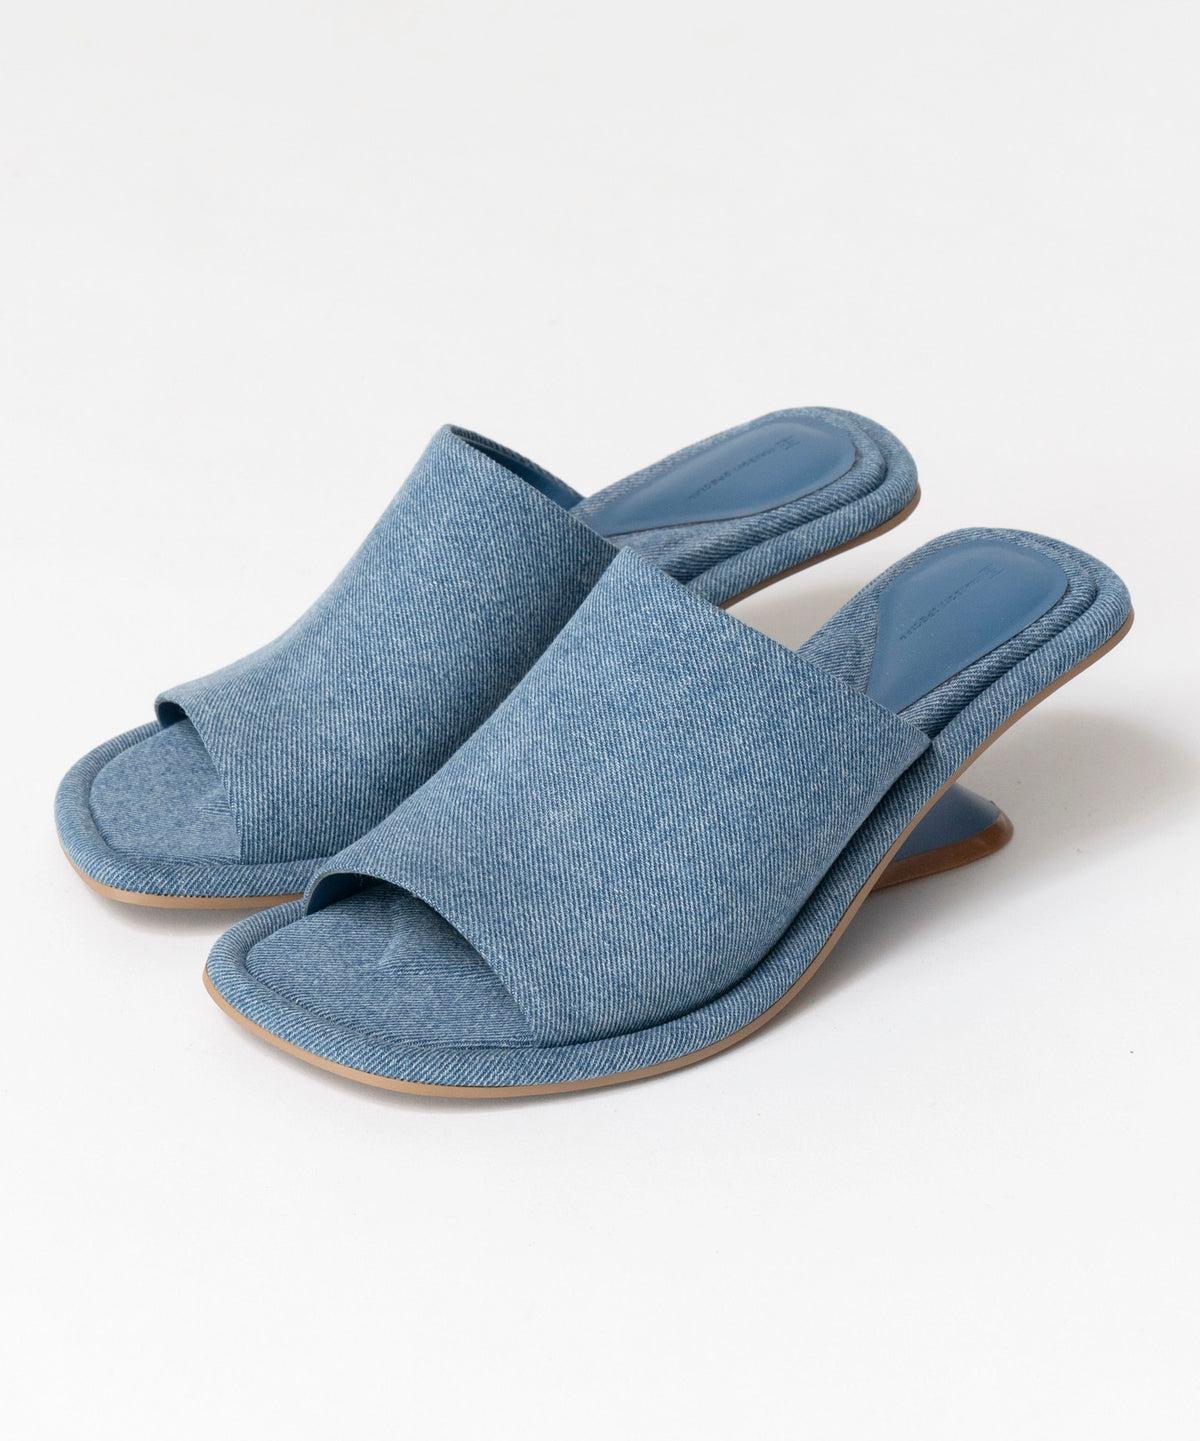 【SALE】Float Mule Sandals